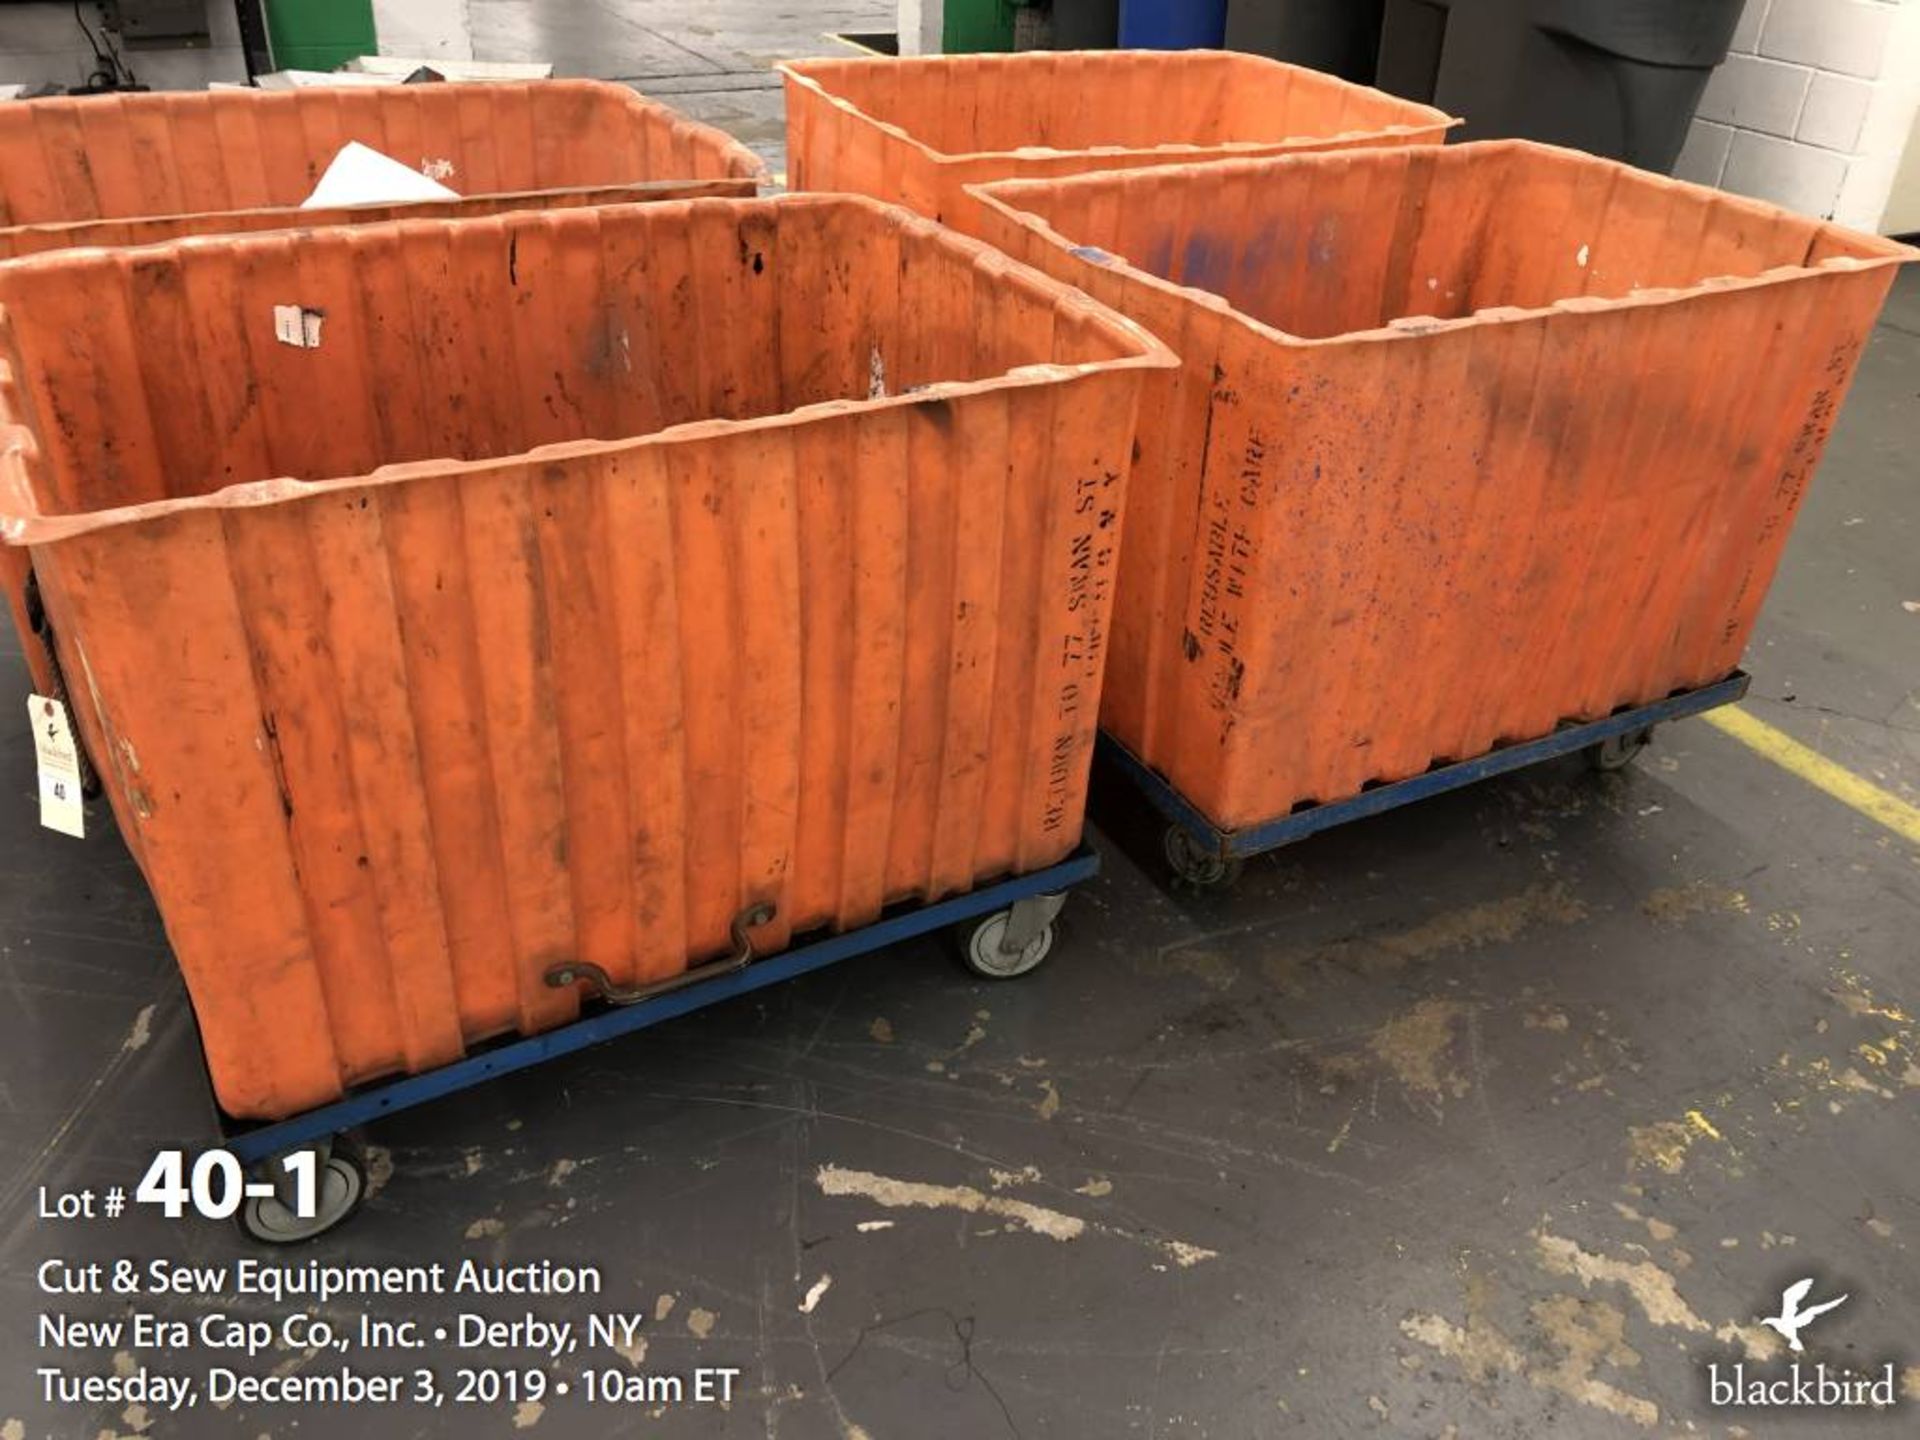 (2) Orange bin carts